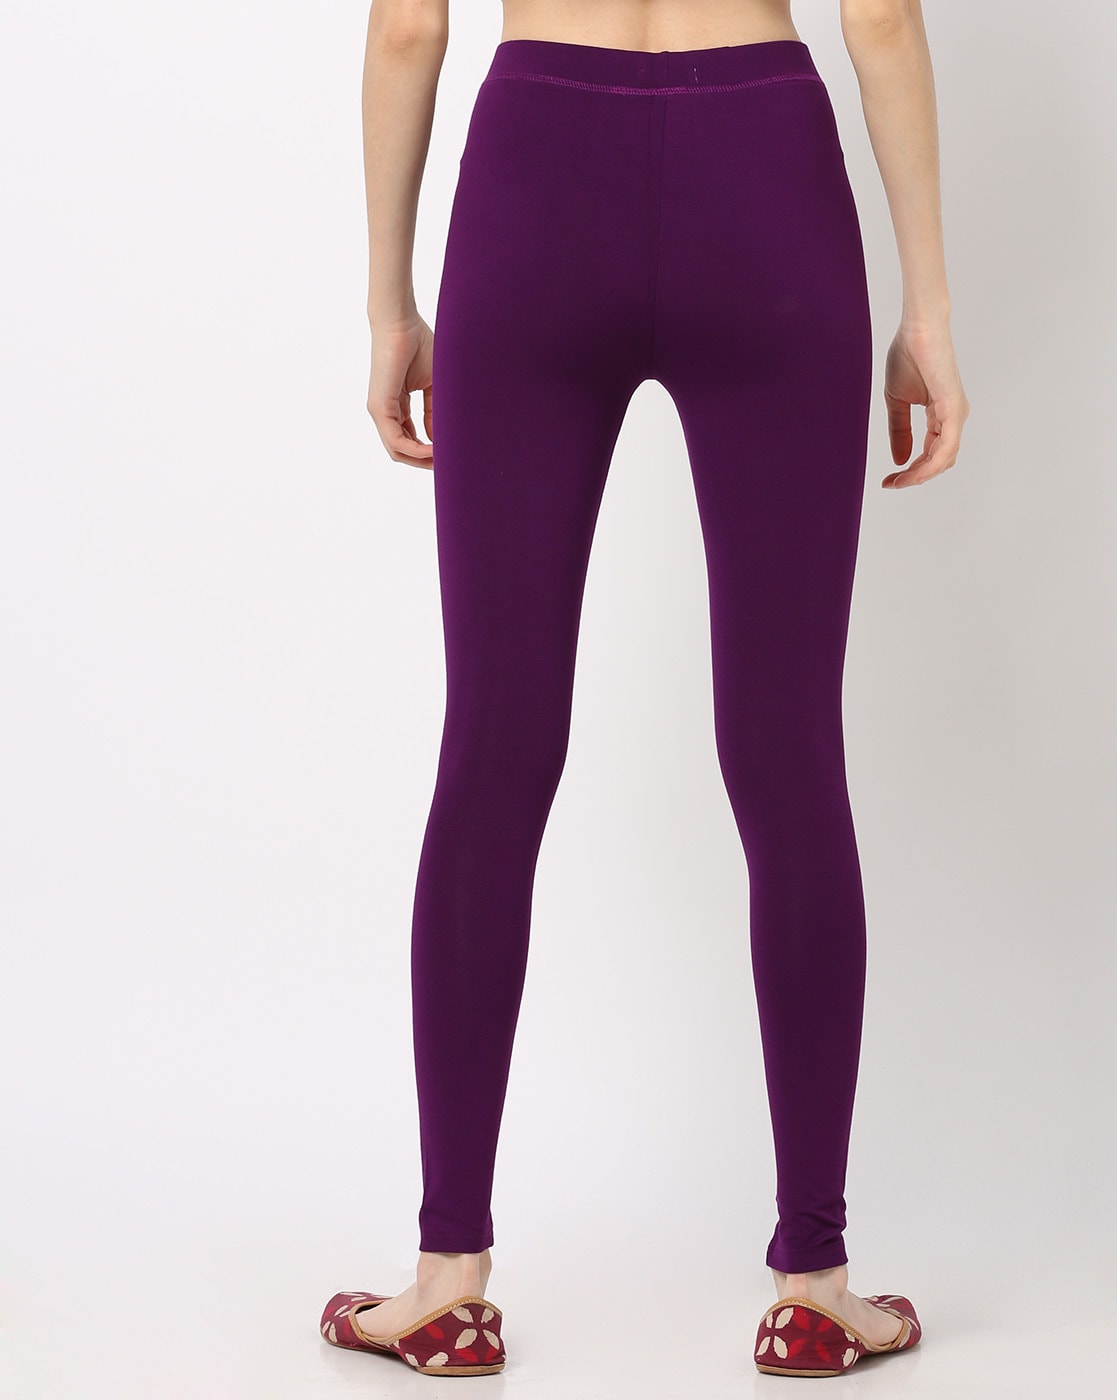 Buy Purple Leggings for Women by De Moza Online